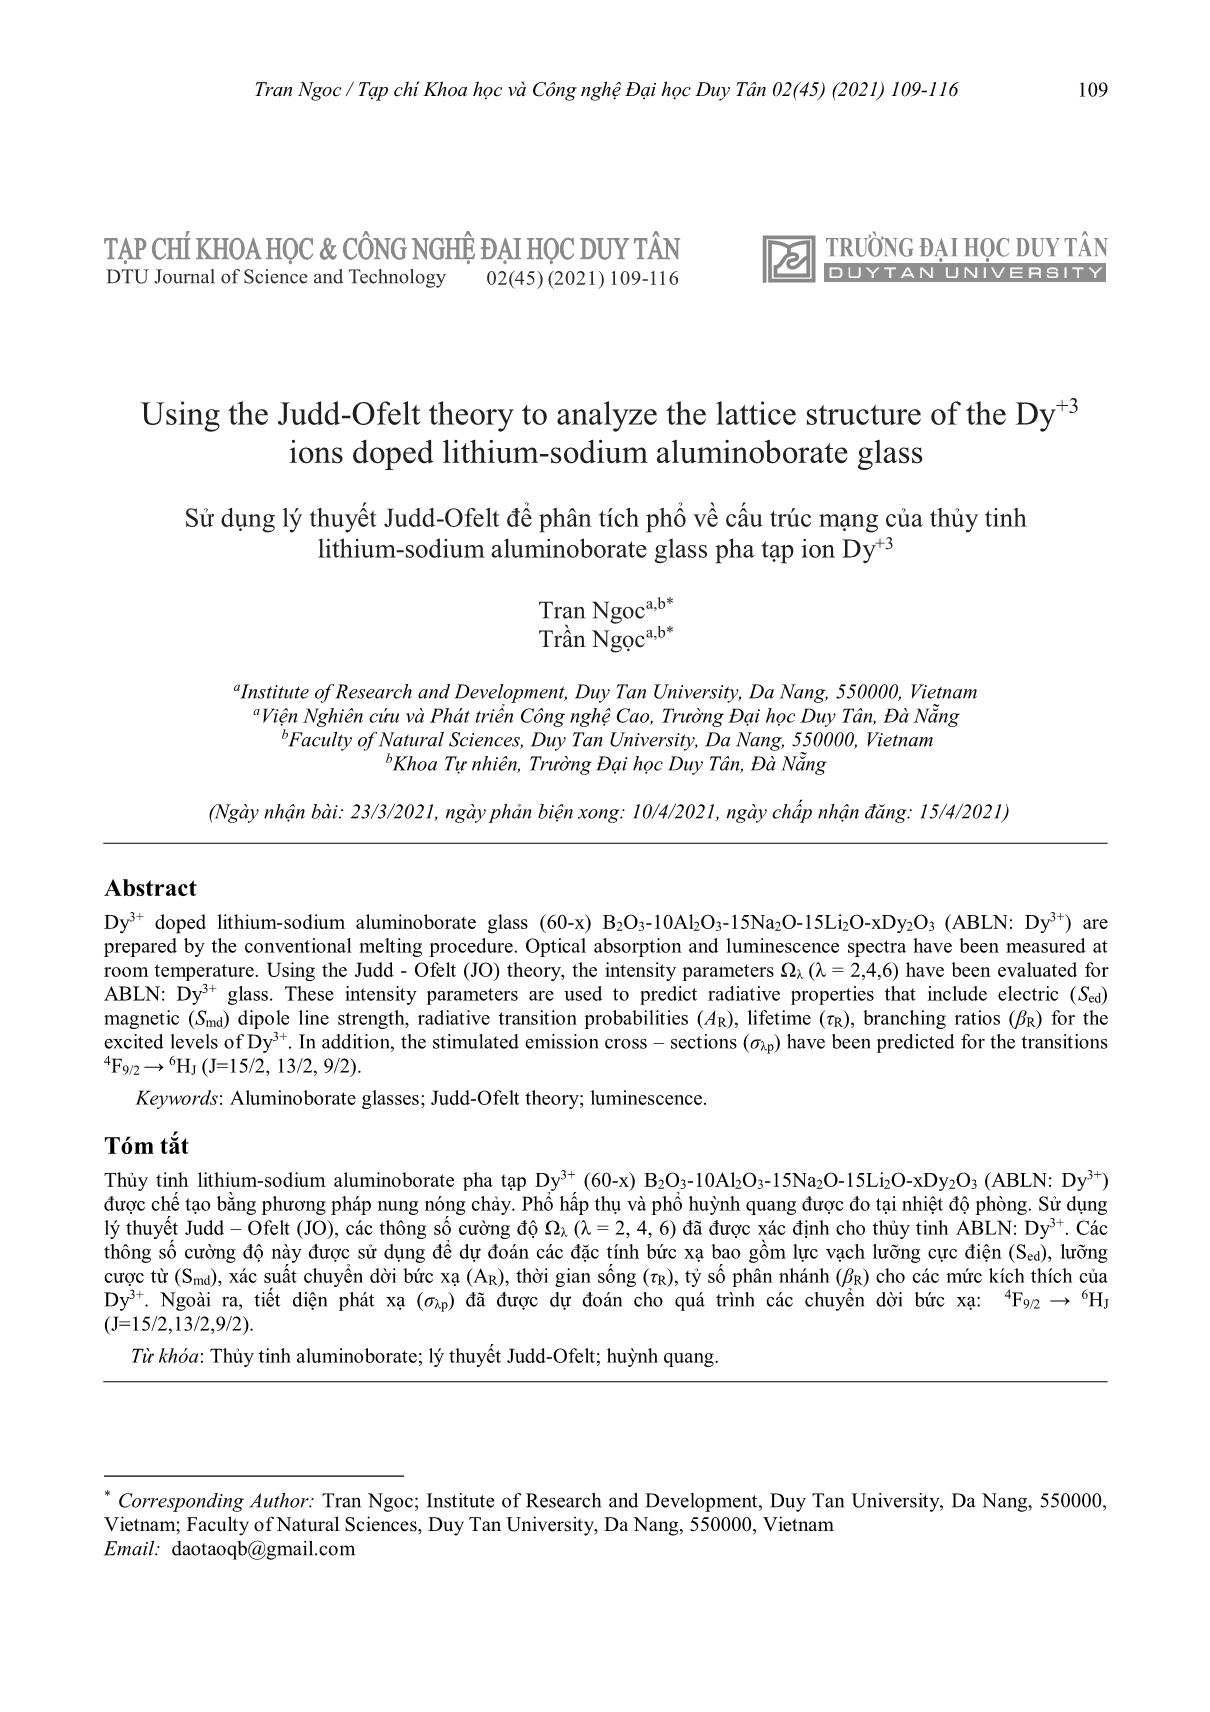 Sử dụng lý thuyết Judd-Ofelt để phân tích phổ về cấu trúc mạng của thủy tinh lithium-sodium aluminoborate glass pha tạp ion Dy+3 trang 1